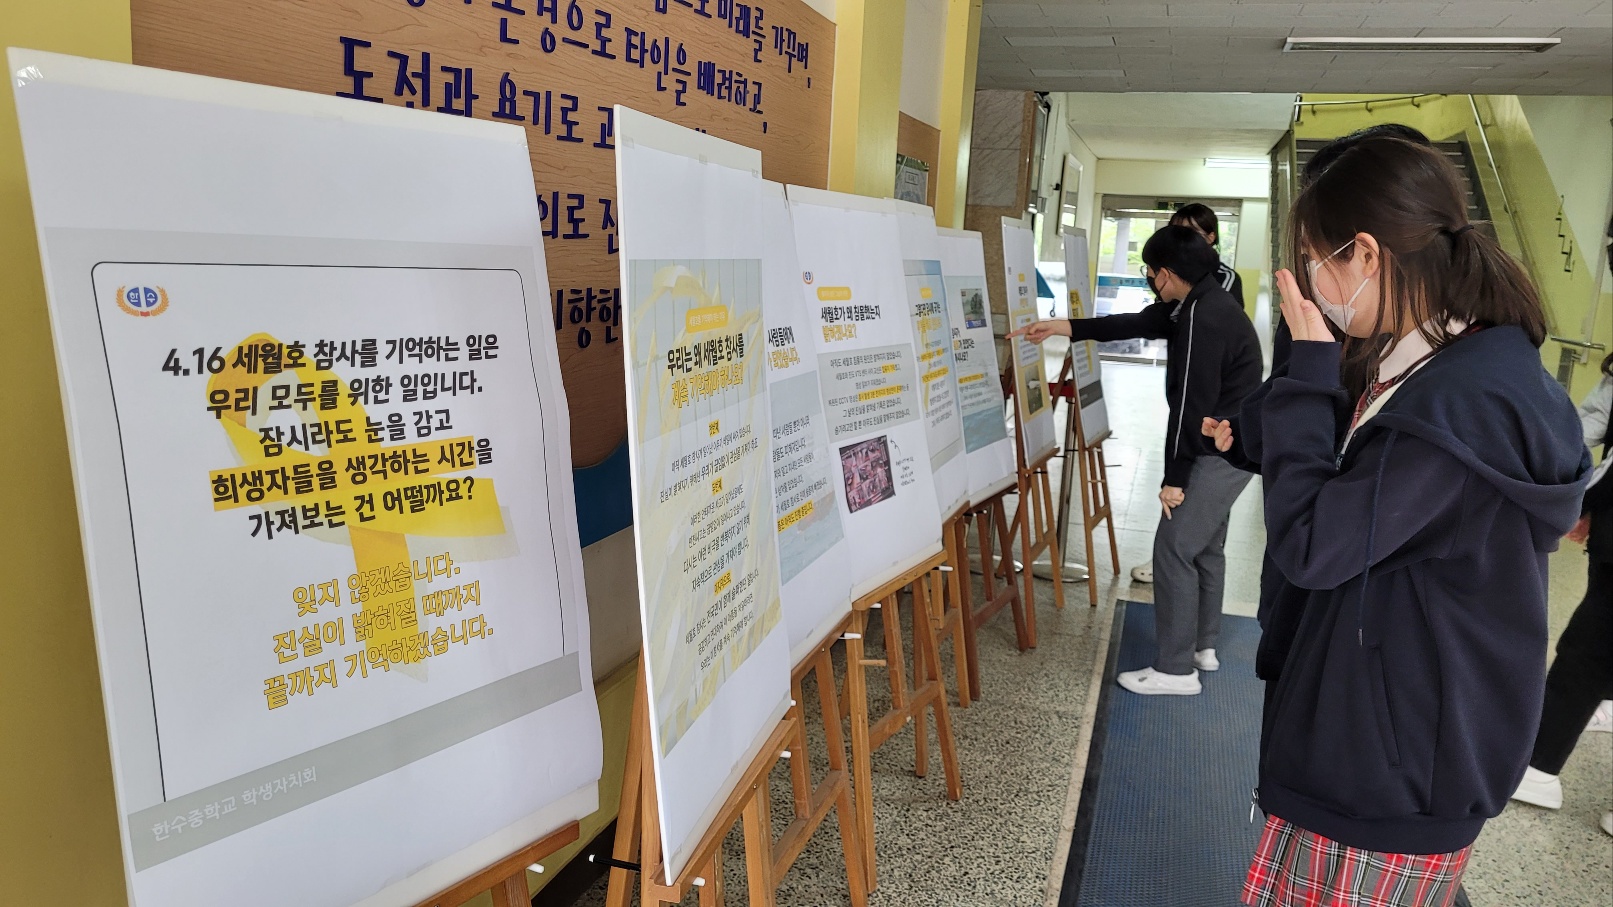 한수중 학생들이 세월호 참사와 관련된 메시지를 읽는 모습. 강양희 교사 제공